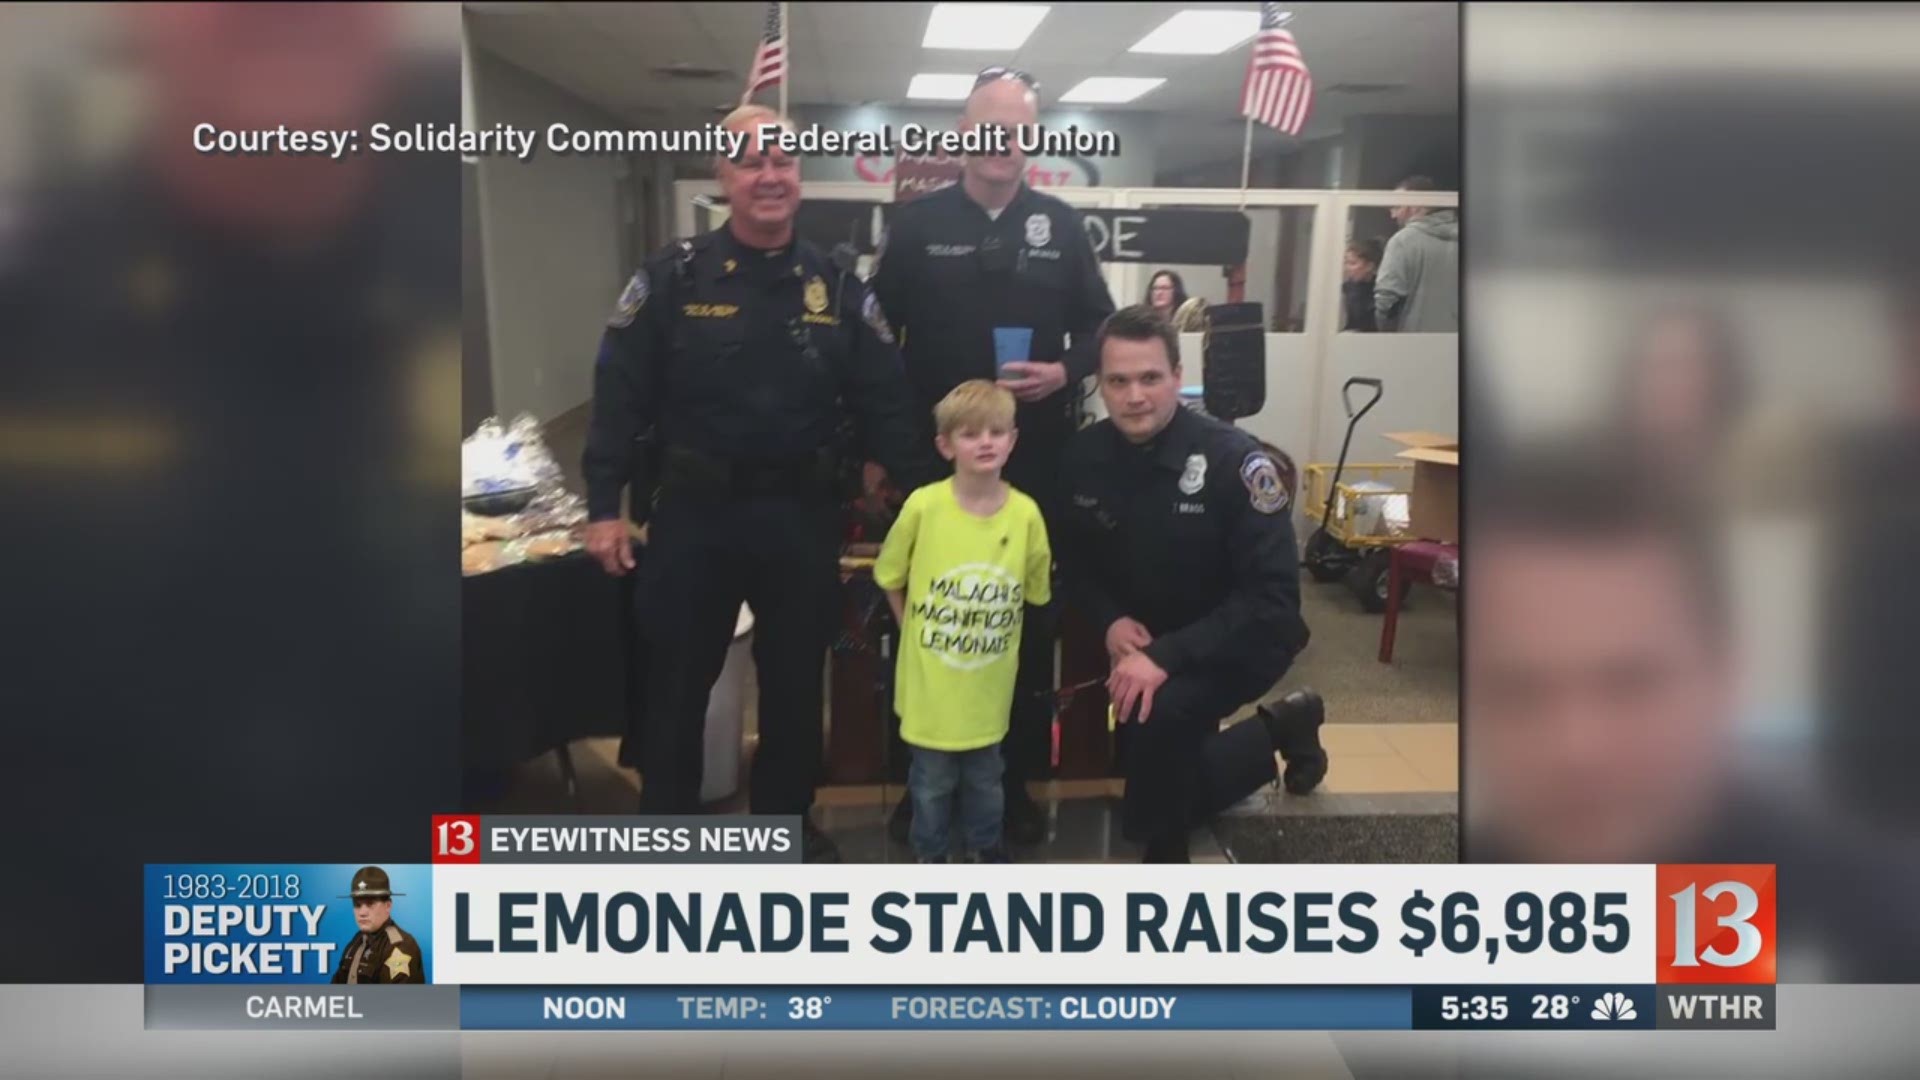 Lemonade stand raises $7,000 for Pickett family